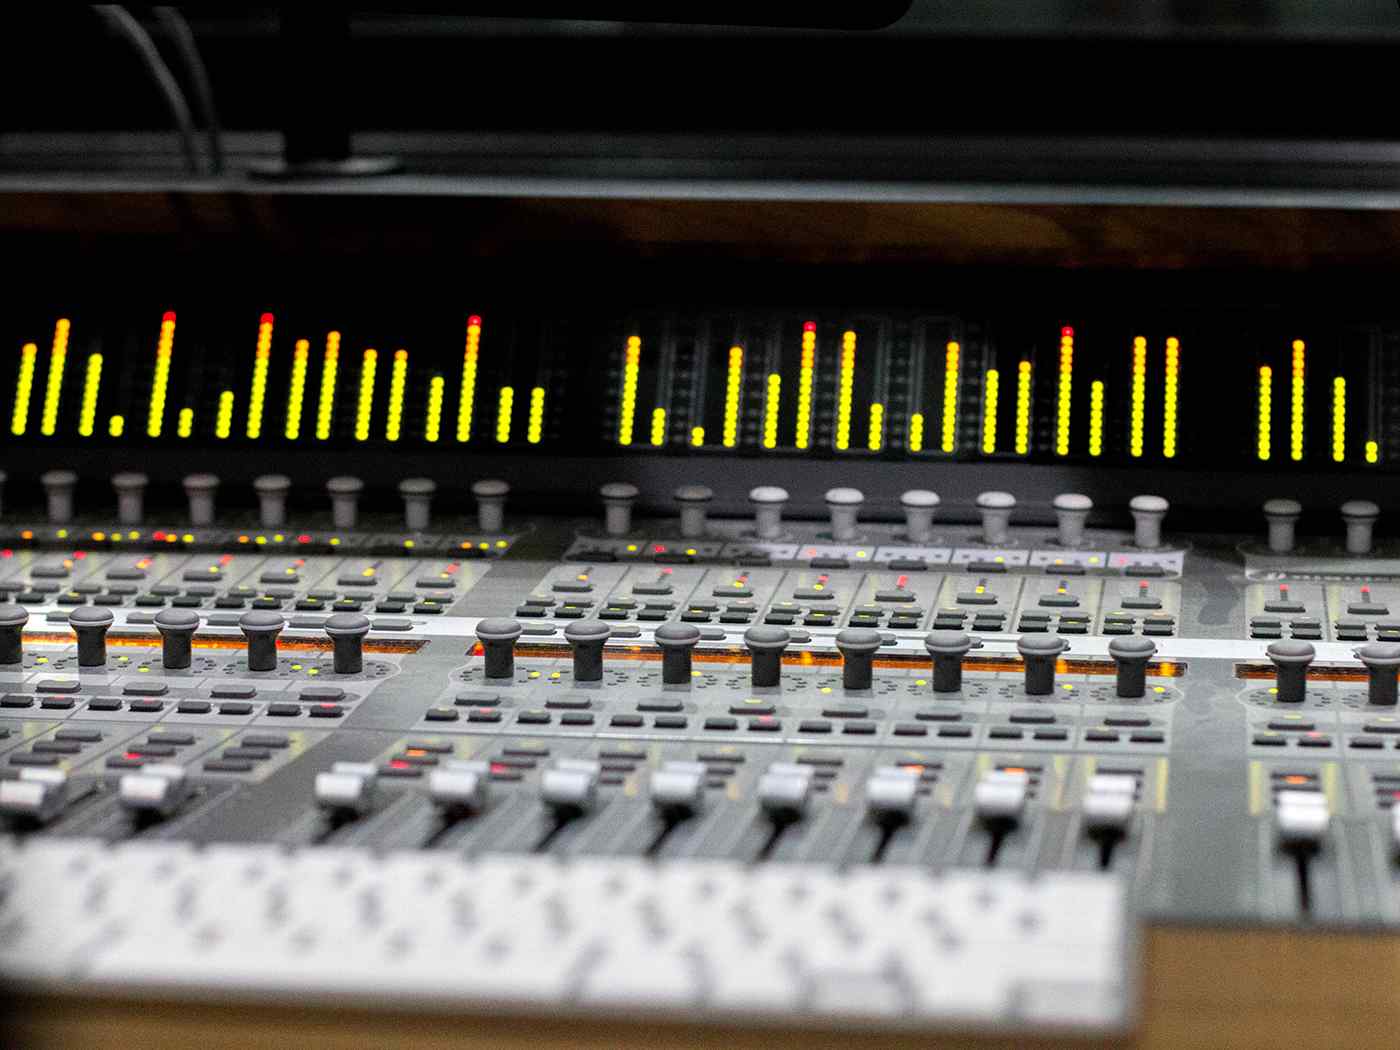 Audio mixing board. 